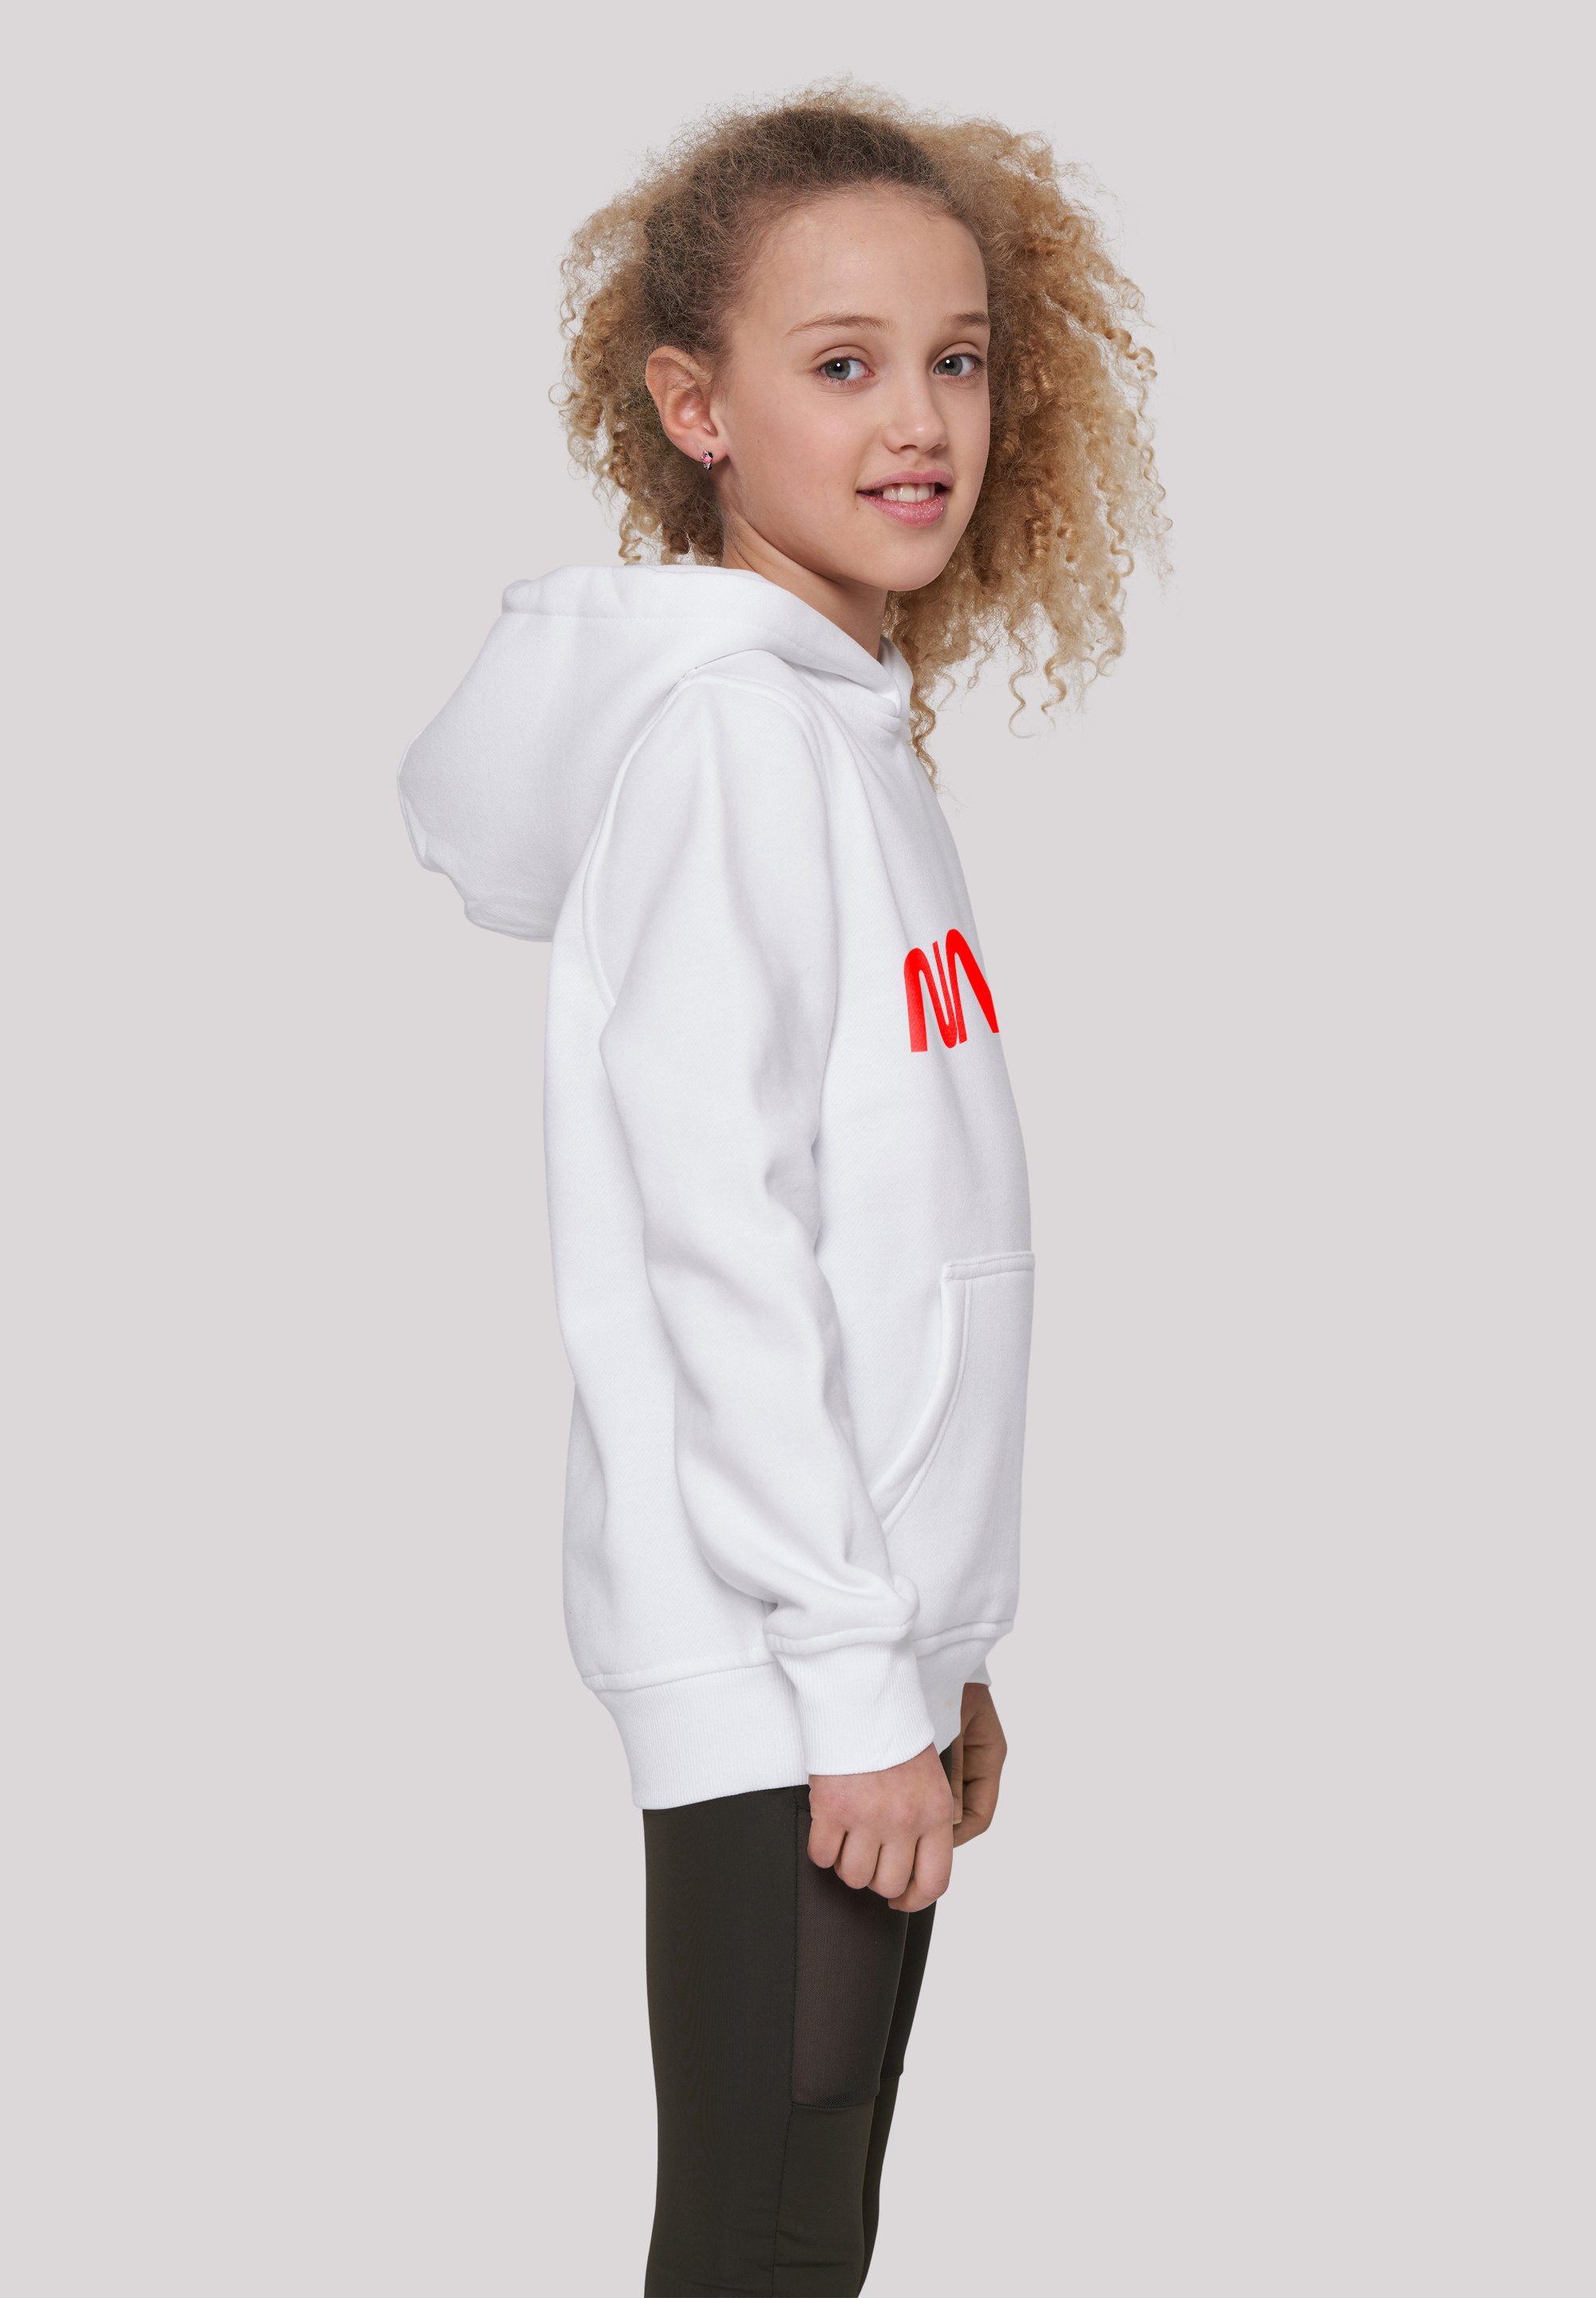 Unisex Modern Merch,Jungen,Mädchen,Bedruckt Logo F4NT4STIC Kinder,Premium Sweatshirt White NASA